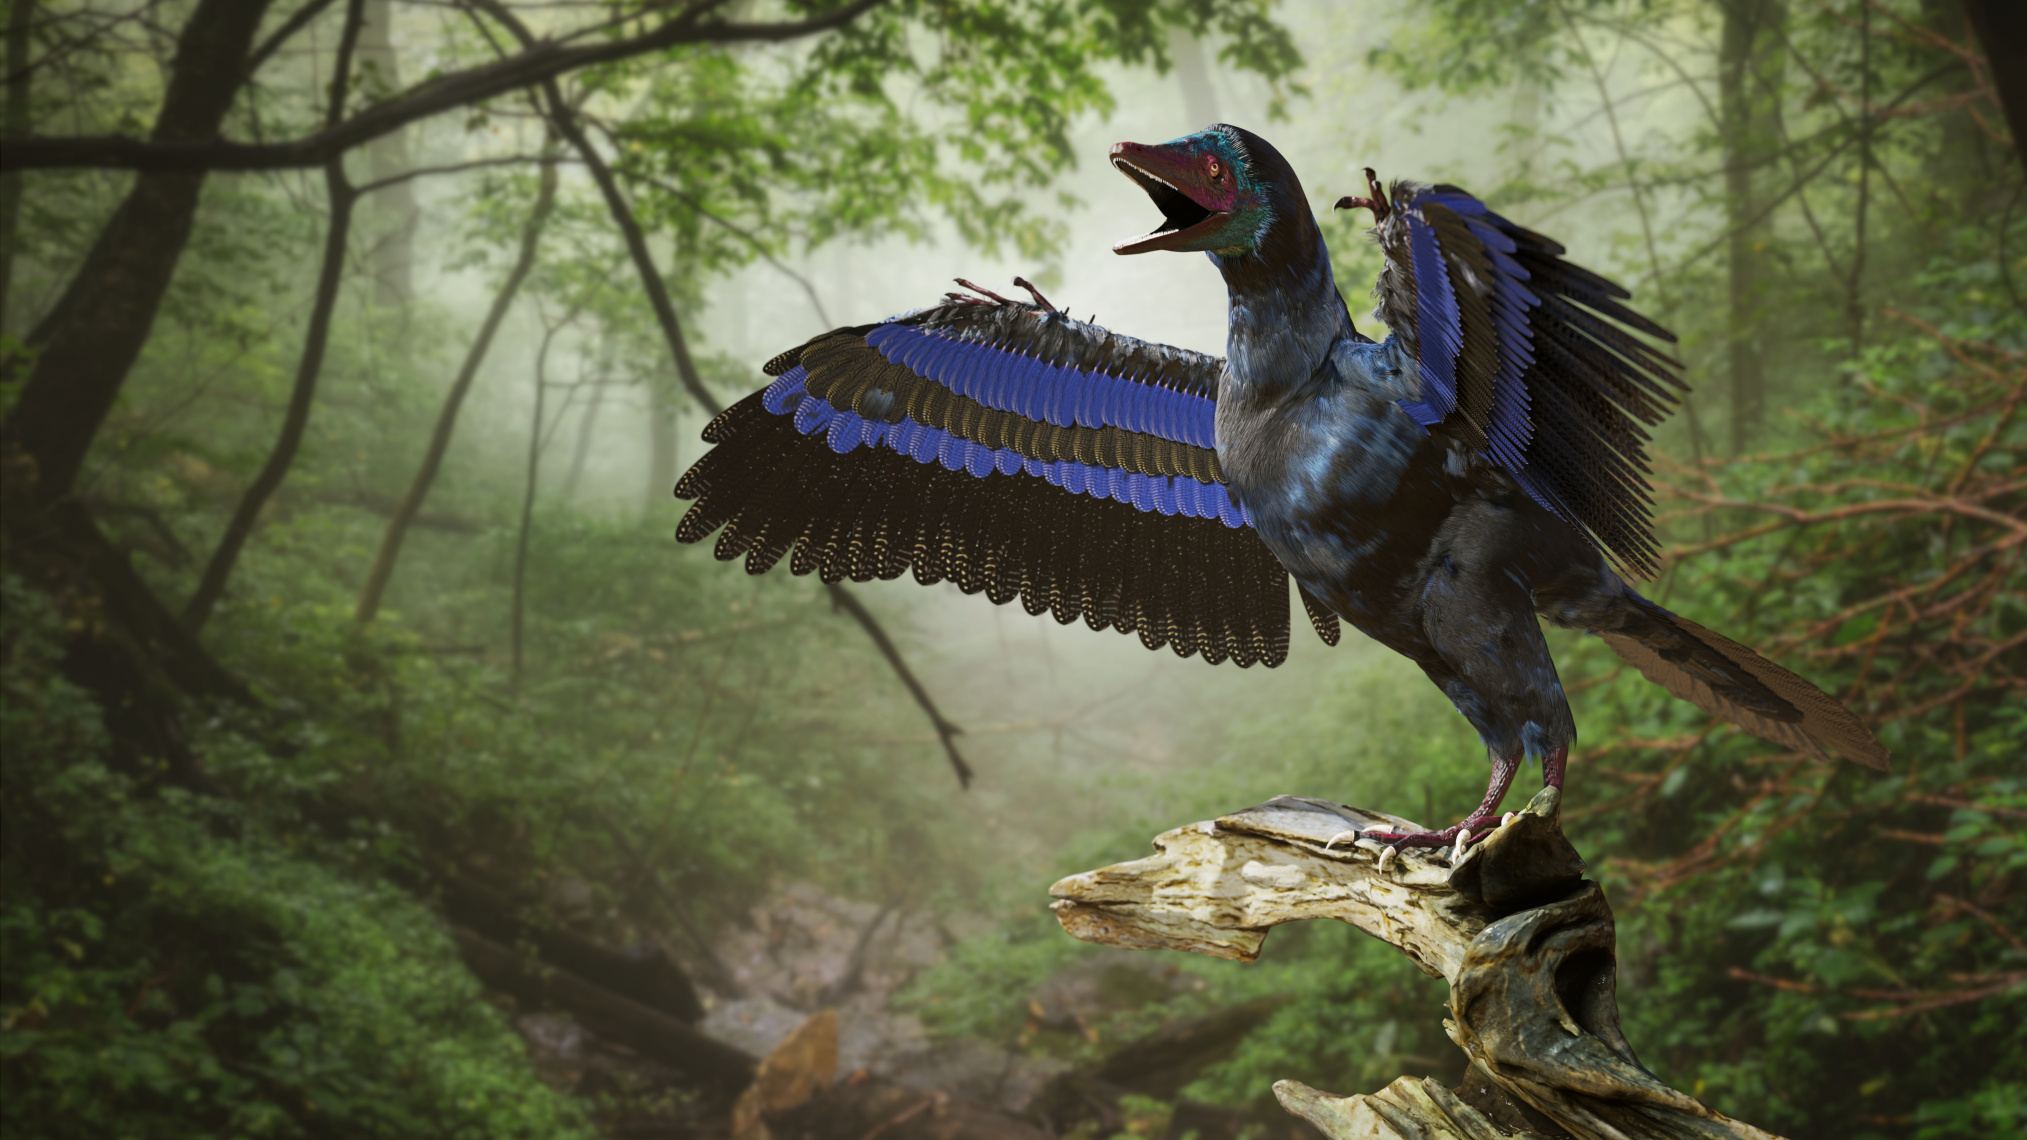 Archaeopteryx, වසර මිලියන 150 කට පමණ පෙර අග ජුරාසික් යුගයේ කුරුල්ලන් වැනි ඩයිනෝසෝරයා (3d rendering)